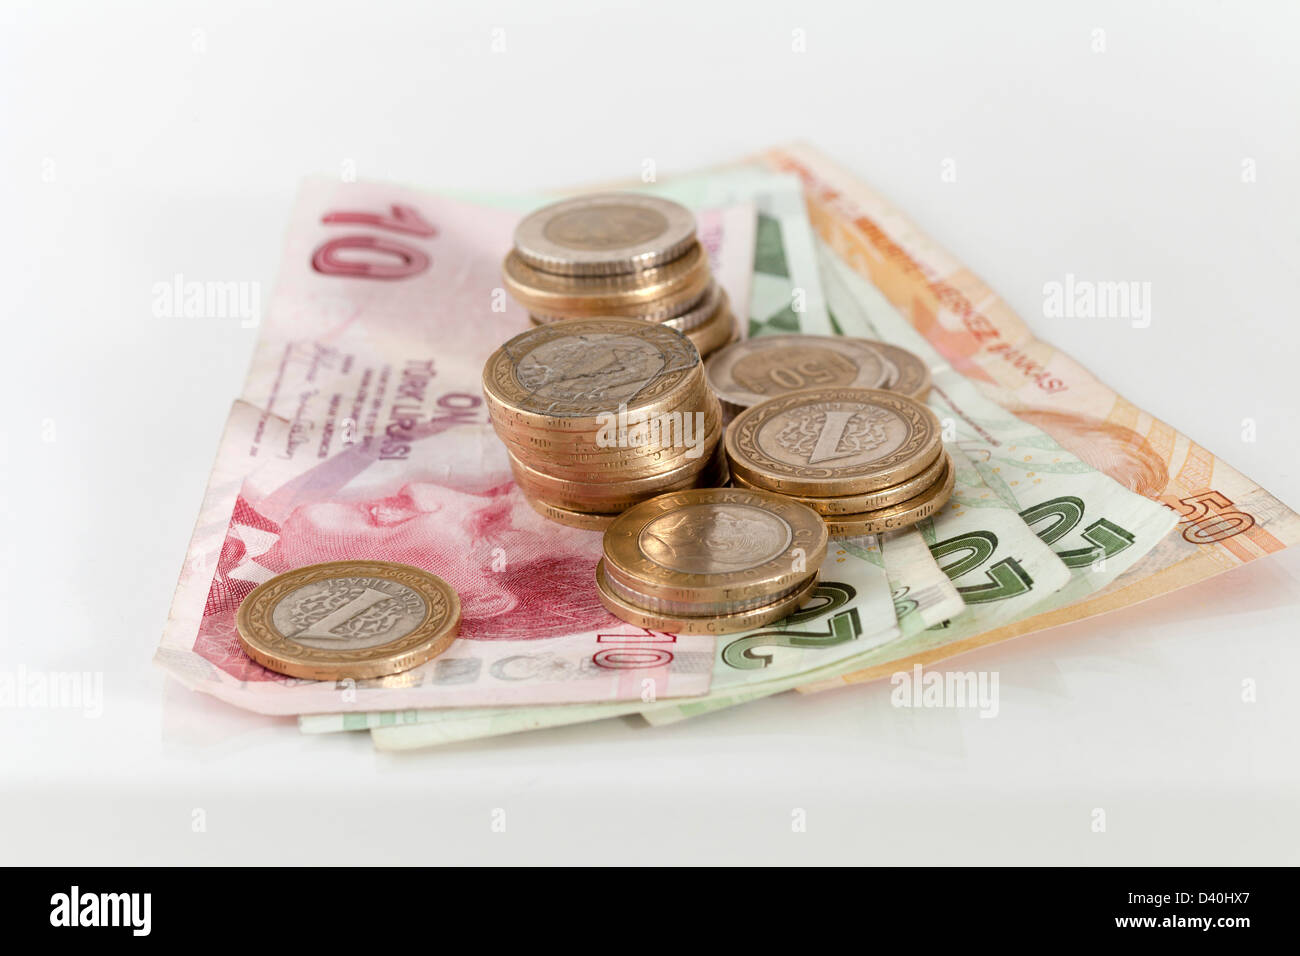 La Lira turca monete sulle banconote con superficie riflettente Foto Stock